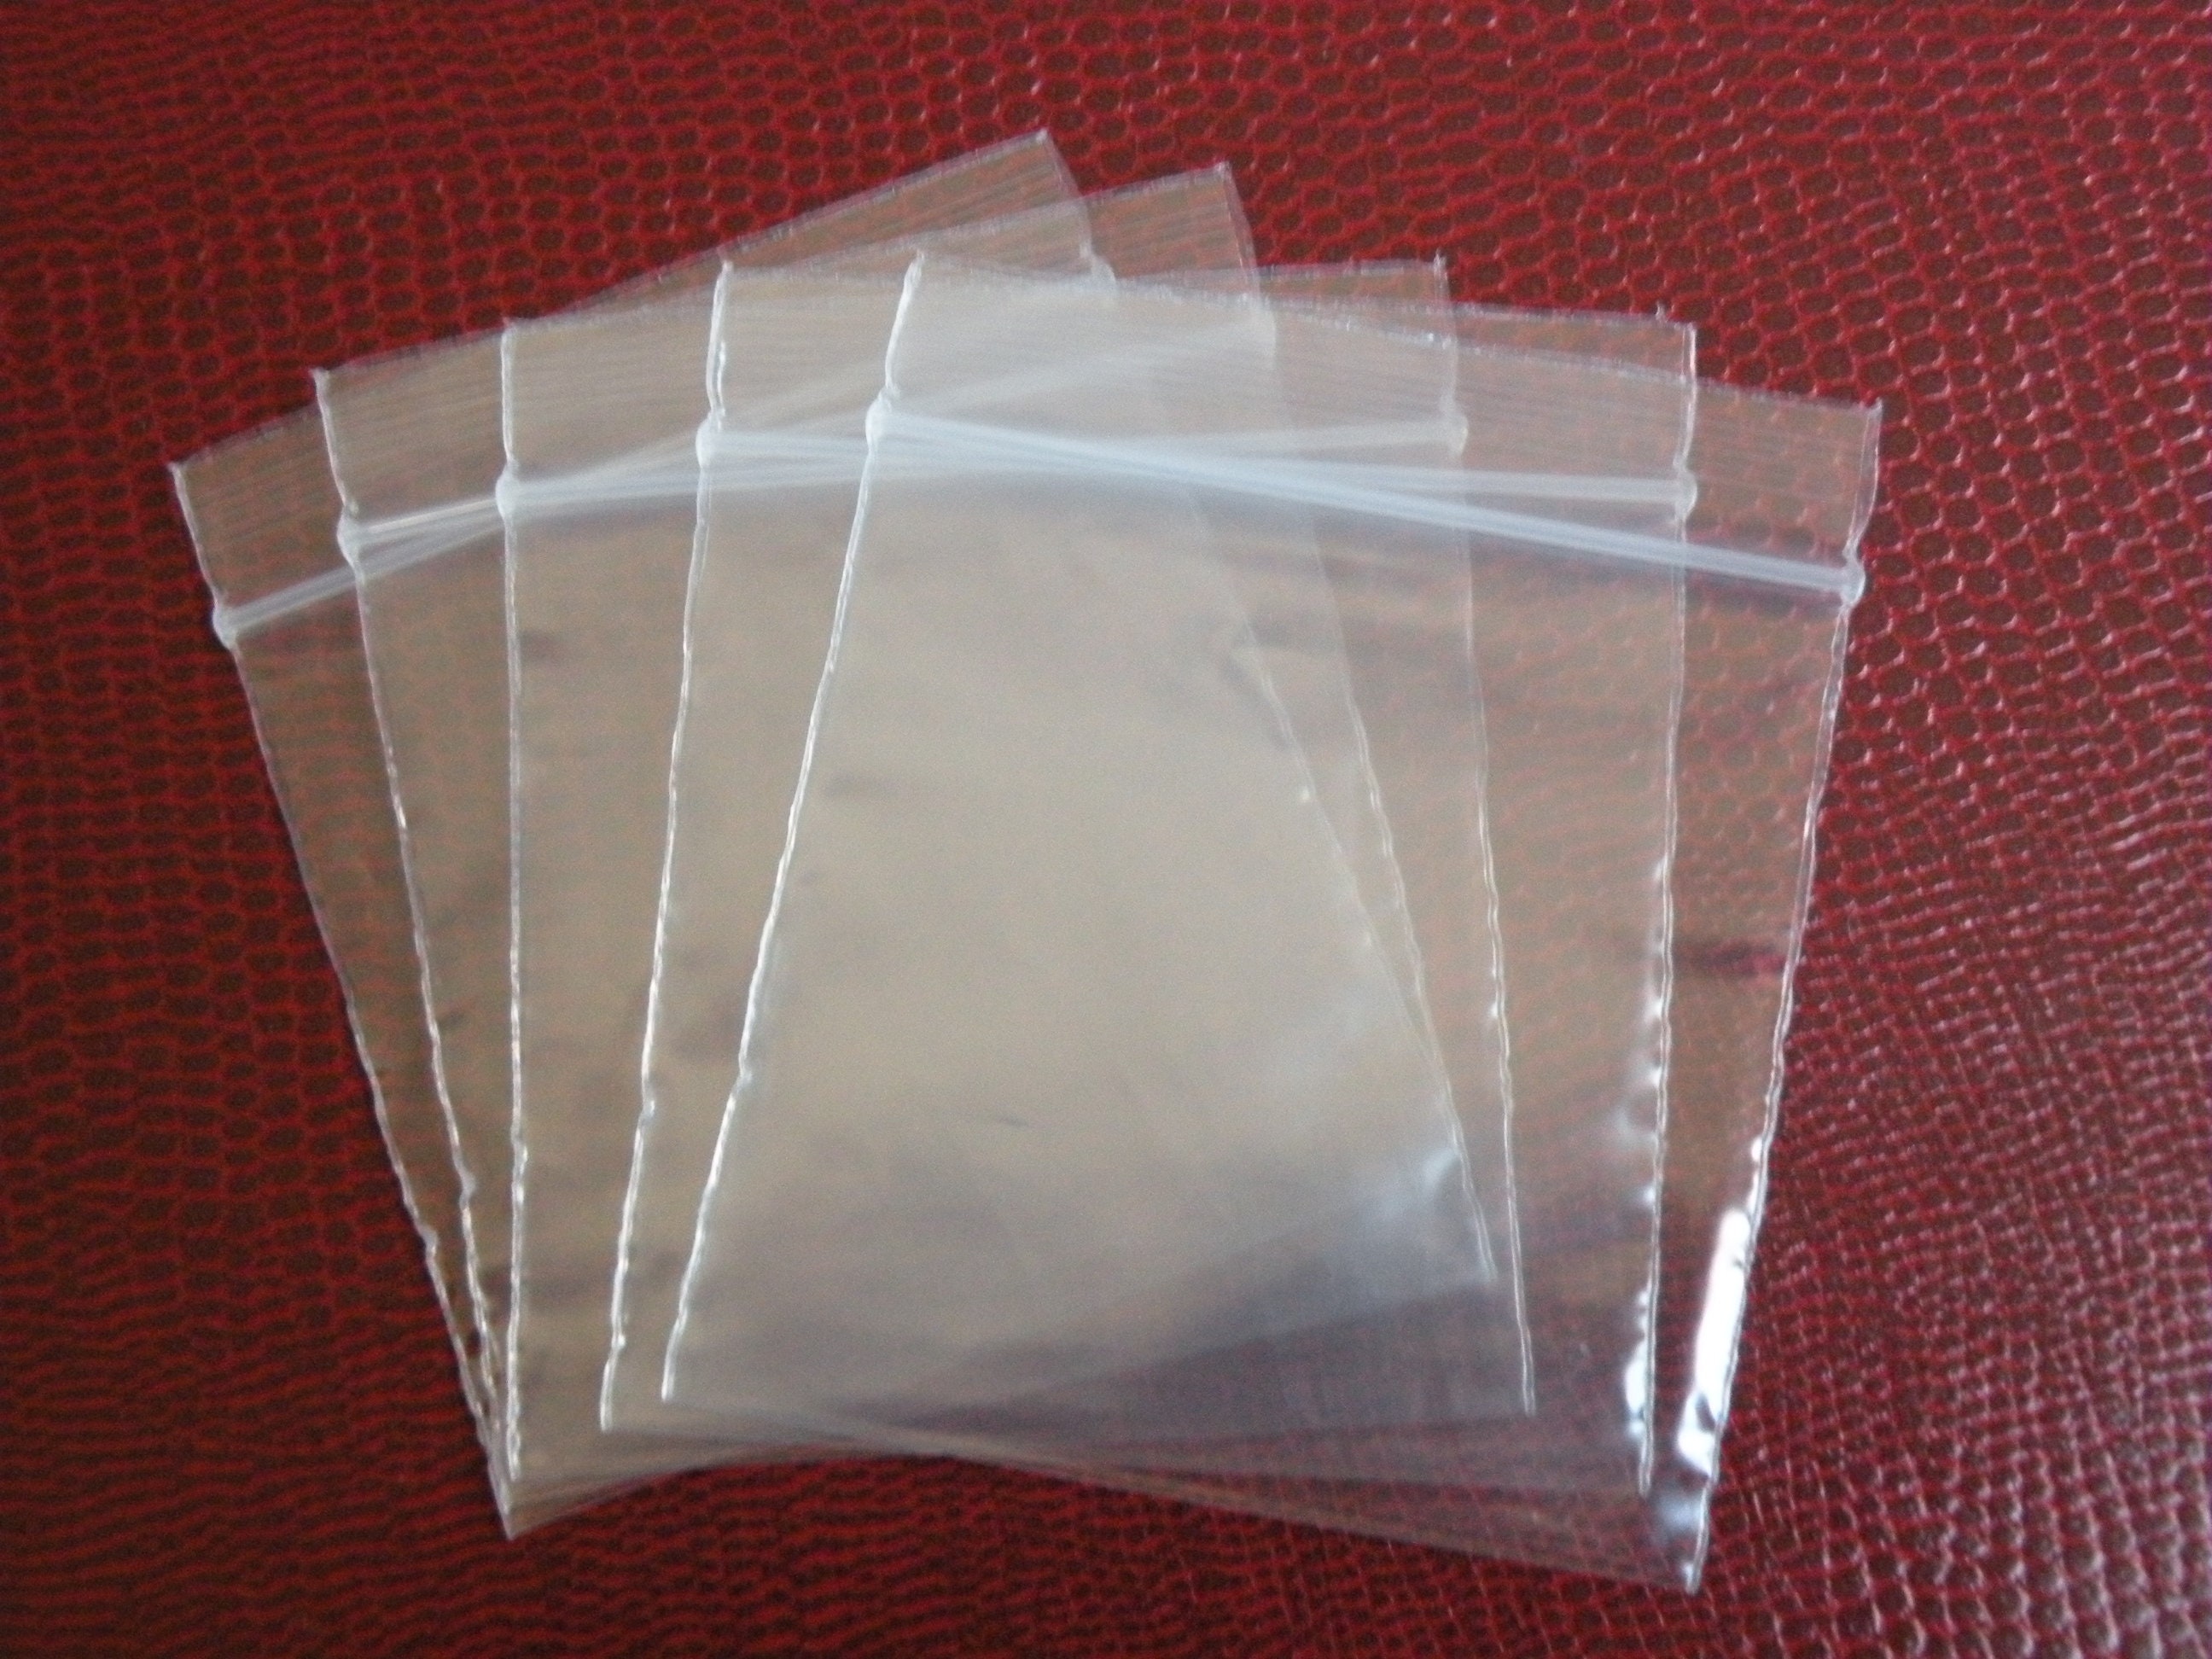 Bolsas de Plastico Transparente con Cierre ZIP Recerrable Estuche Granel  2x2